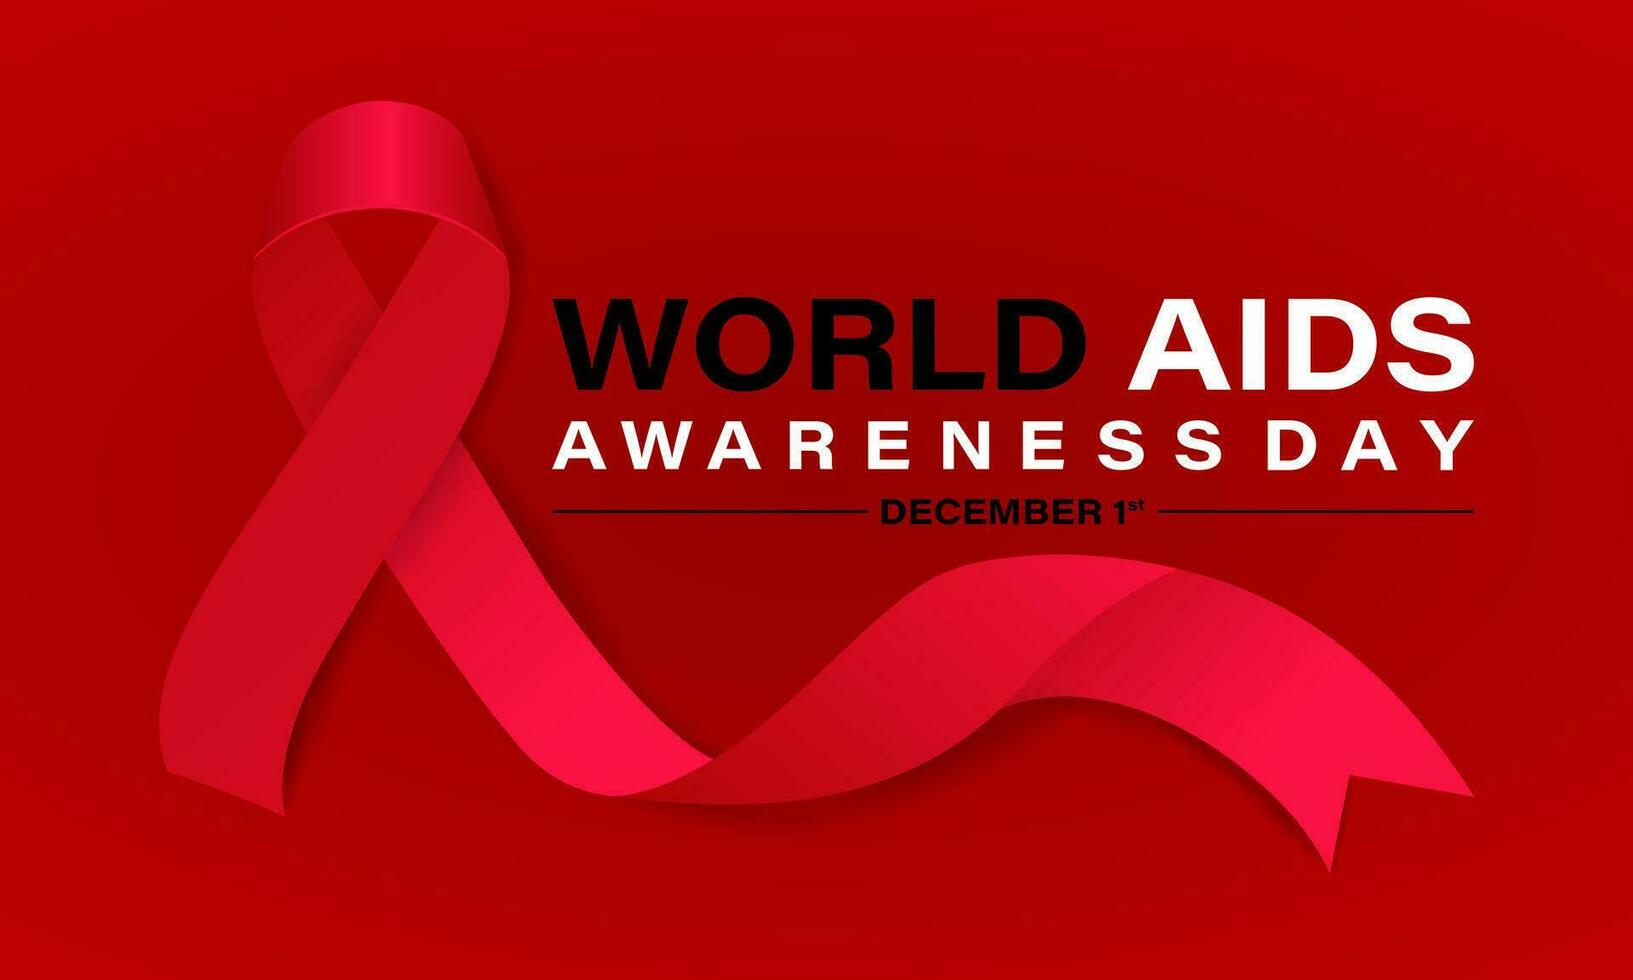 värld AIDS dag begrepp med röd band. baner med realistisk . 1:a december bakgrund, baner, kort, affisch, mall. vektor illustration.